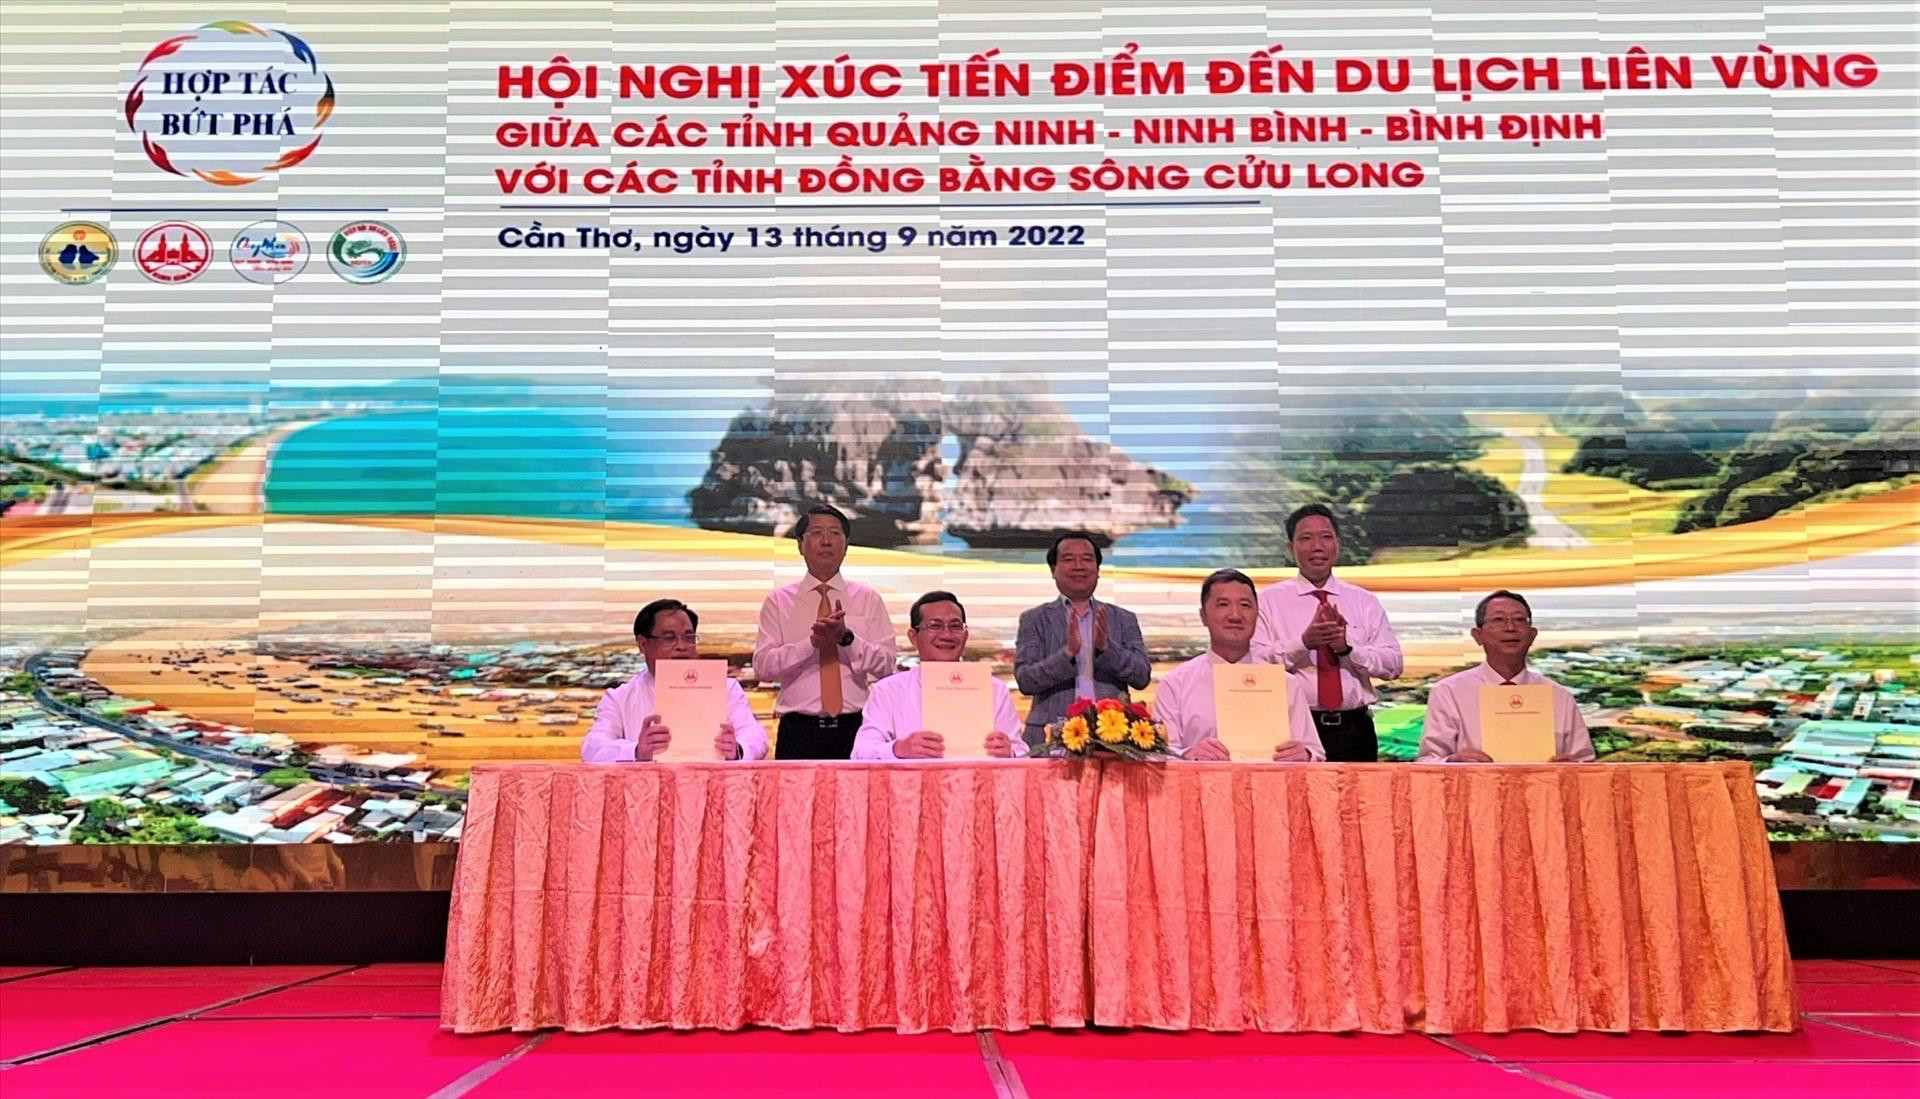 Du lịch Quảng Ninh tham gia Hội nghị xúc tiến, quảng bá du lịch tại các tỉnh Đồng bằng sông Cửu Long